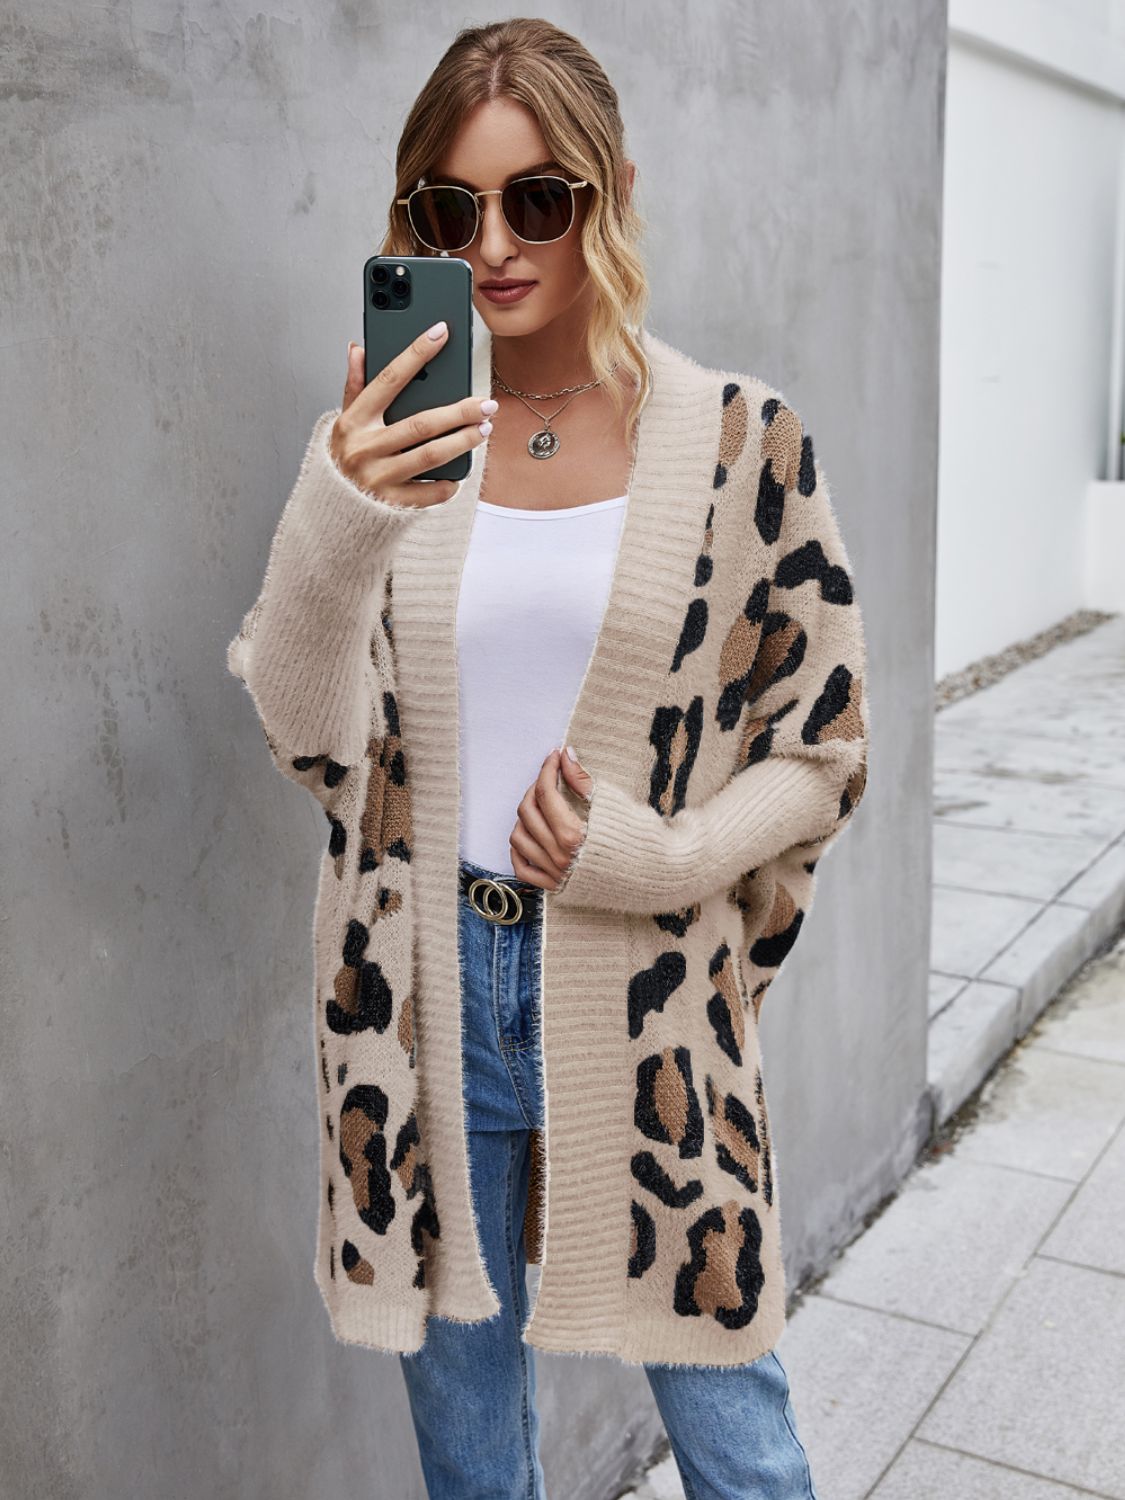 Top Leopard Pattern Fuzzy Cardigan